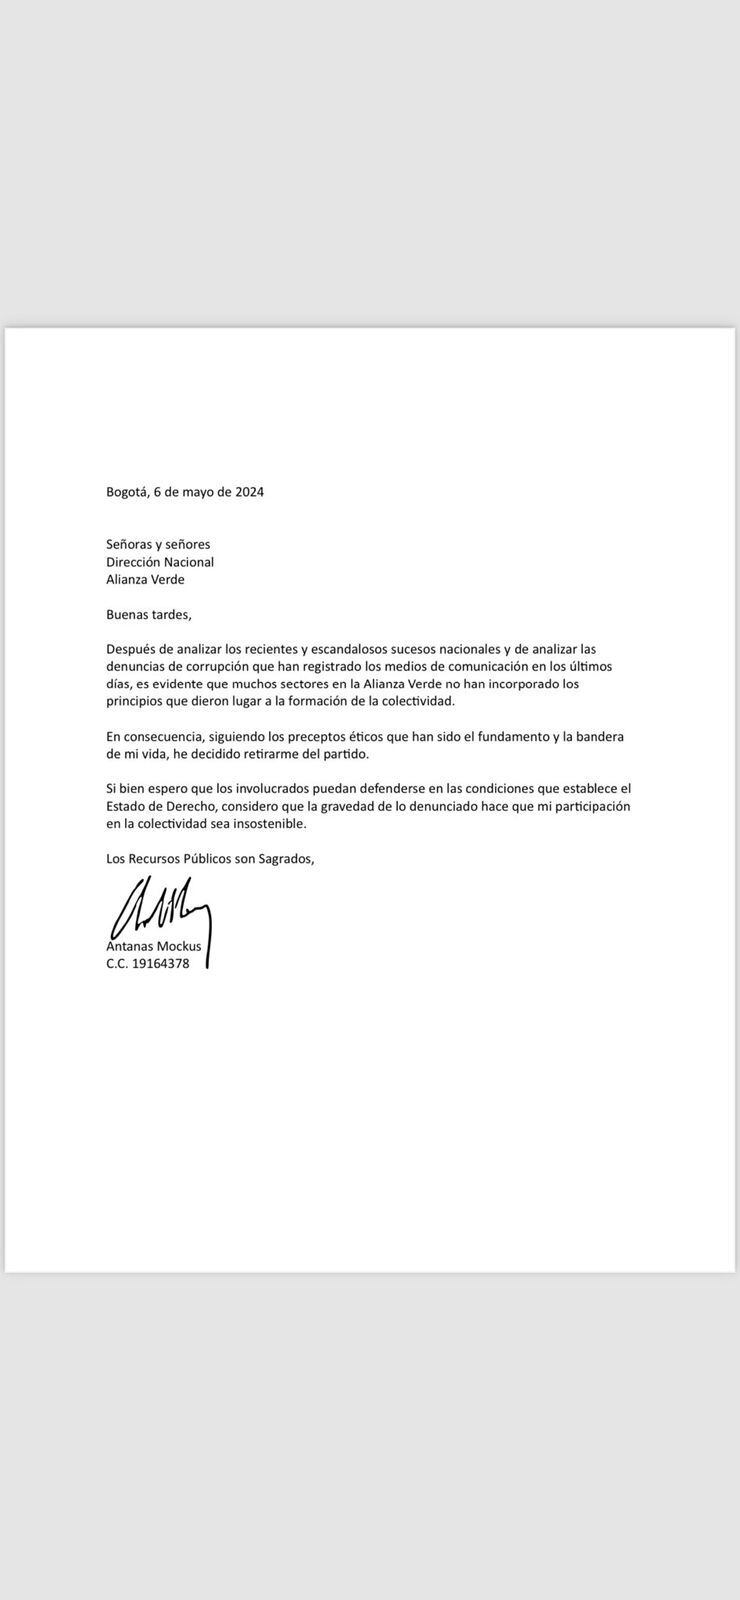 La carta de renuncia de Antanas Mockus.